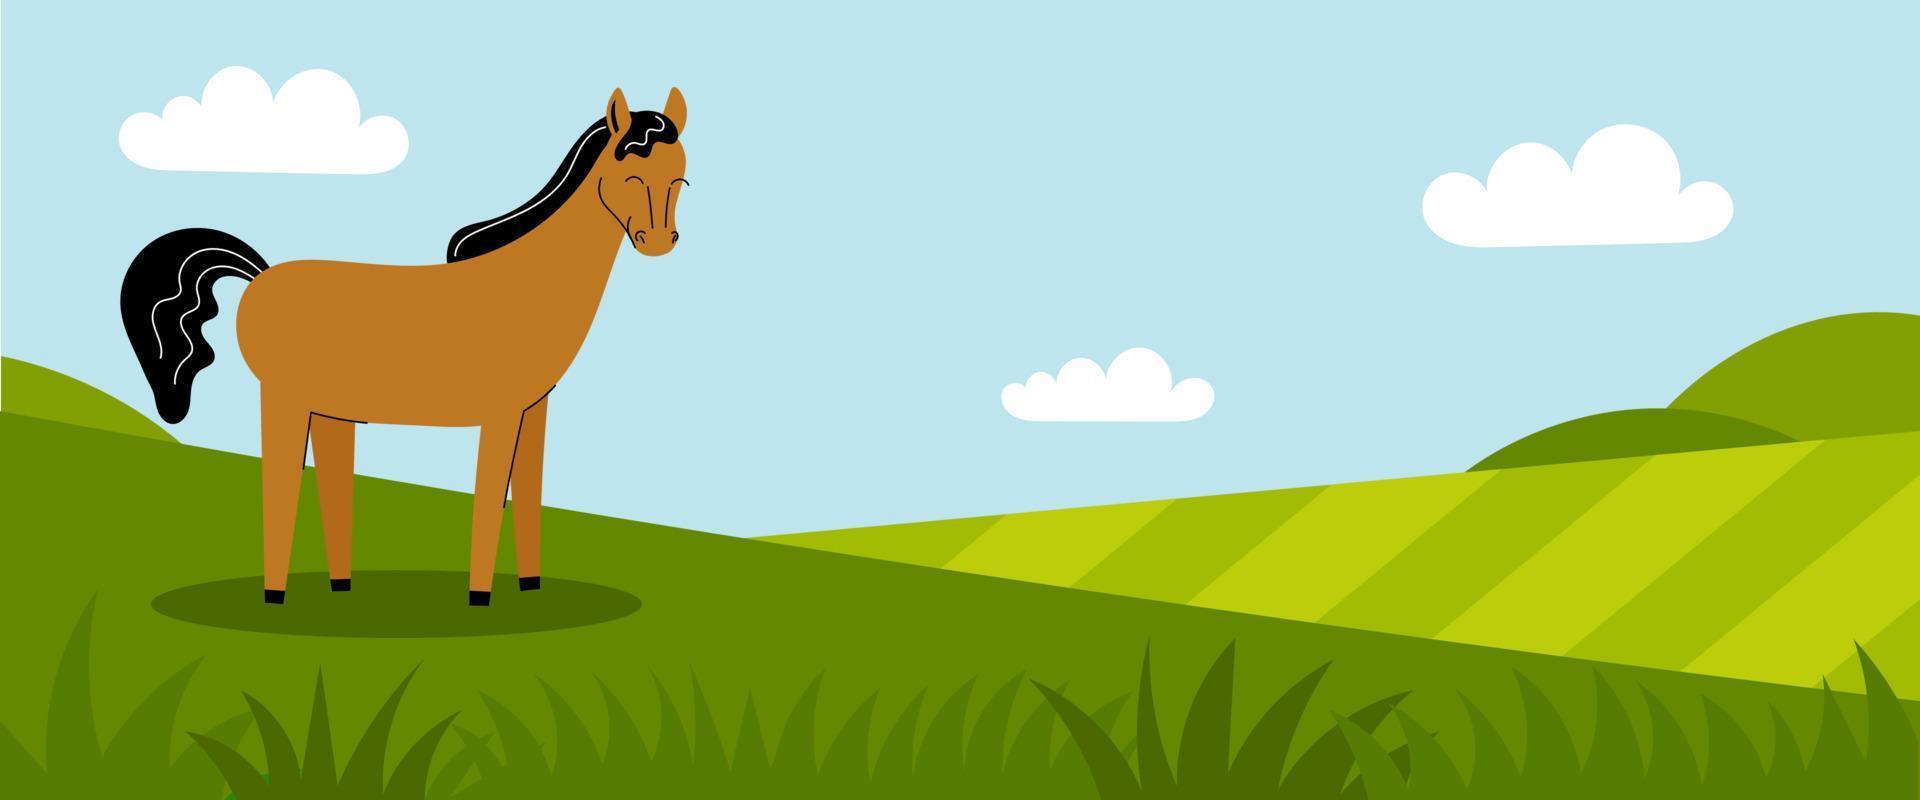 un lindo caballo marrón se encuentra en un prado verde. animales de granja. panorama de verano con un campo. lugar para su texto. ilustración de color de dibujos animados plana vector